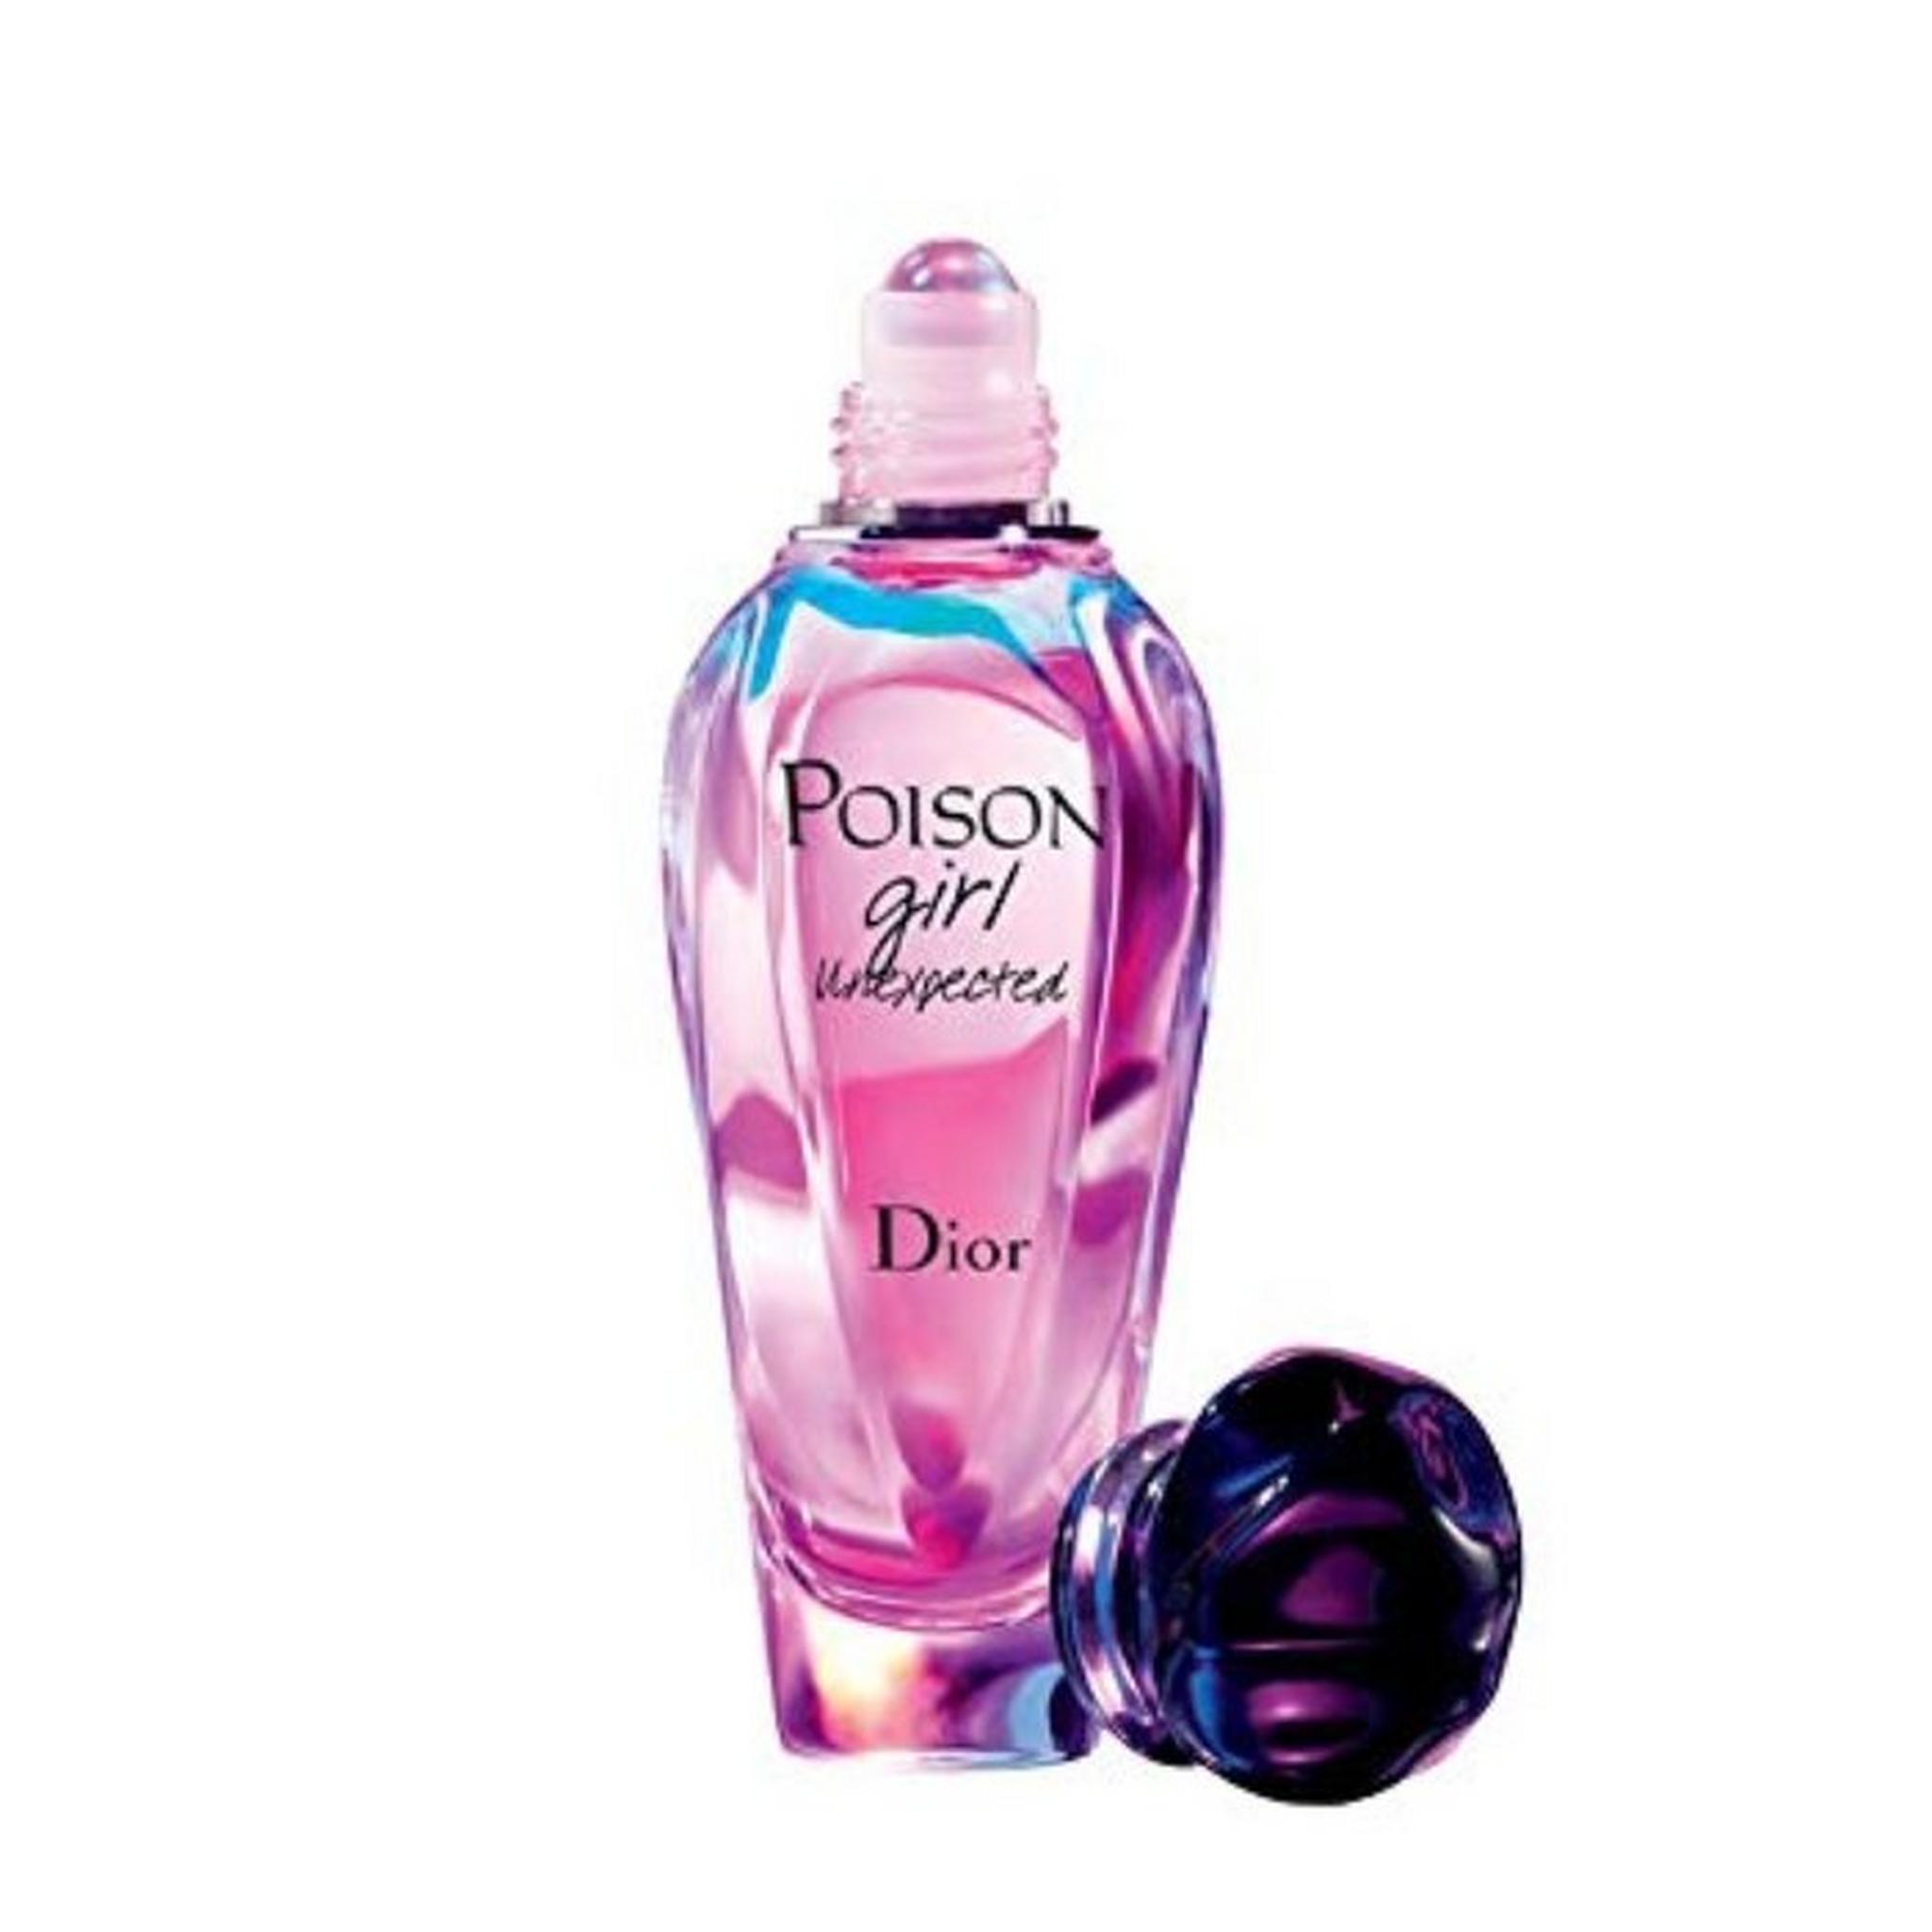 Christian Dior Poison Roler Pearl for Women Eau de Toilette 20ml